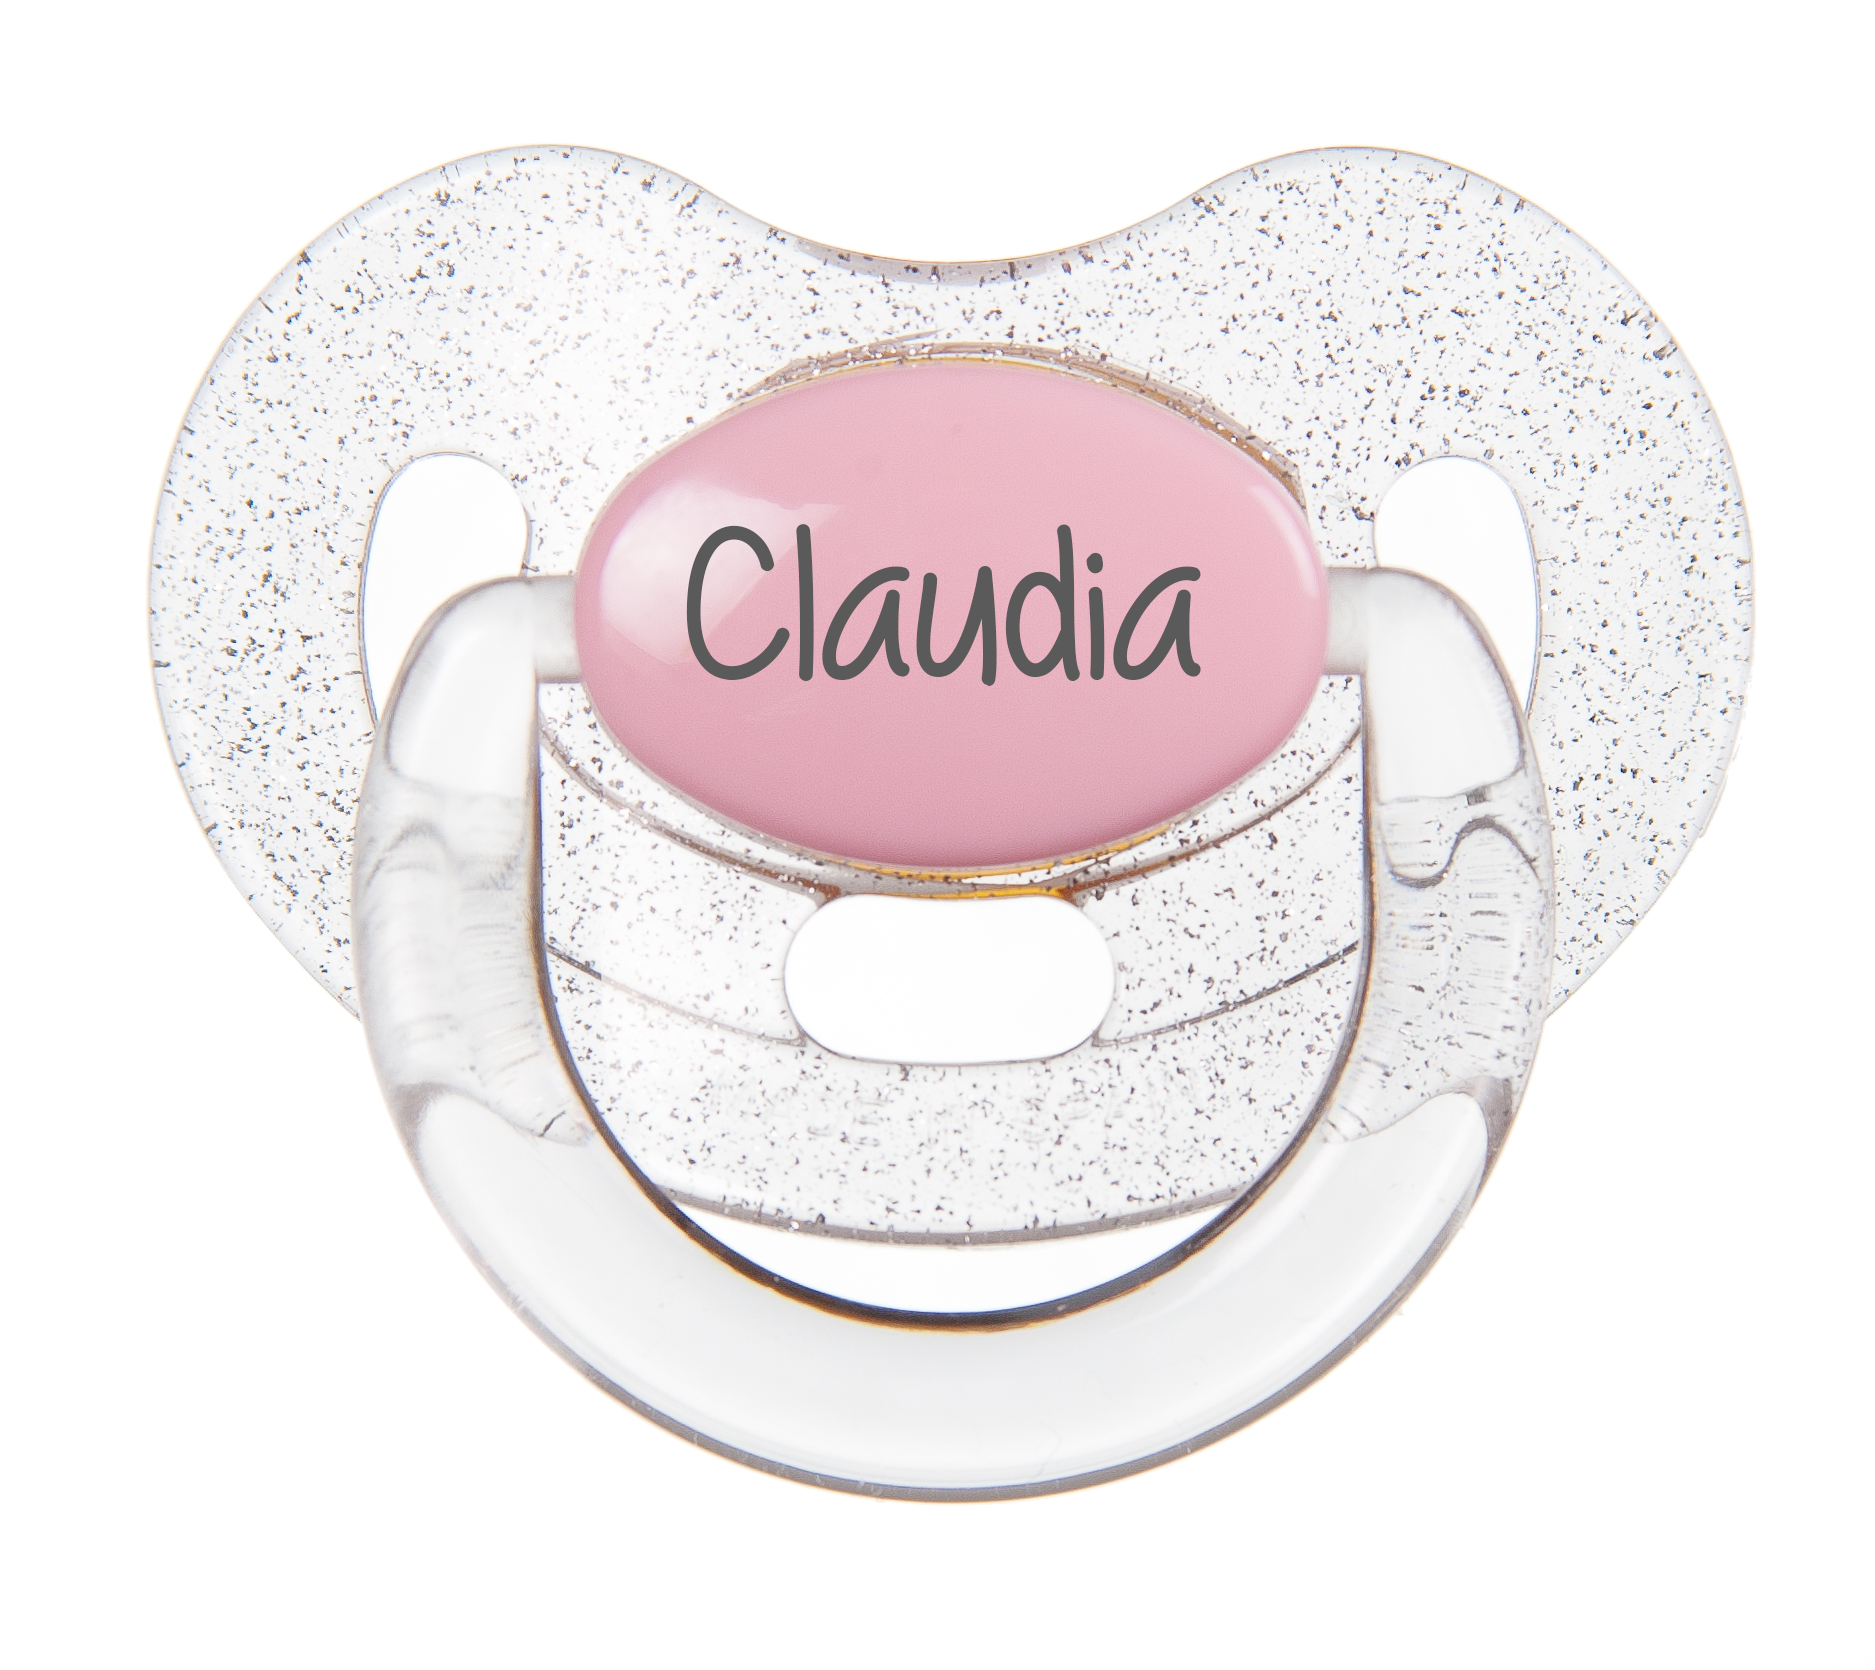 Chupete personalizado con nombre, diseño de princesa, paquete de 3 con  purpurina rosa, blanco y rosa, (disponible de 0 a 6 meses y 6 a 18 meses)